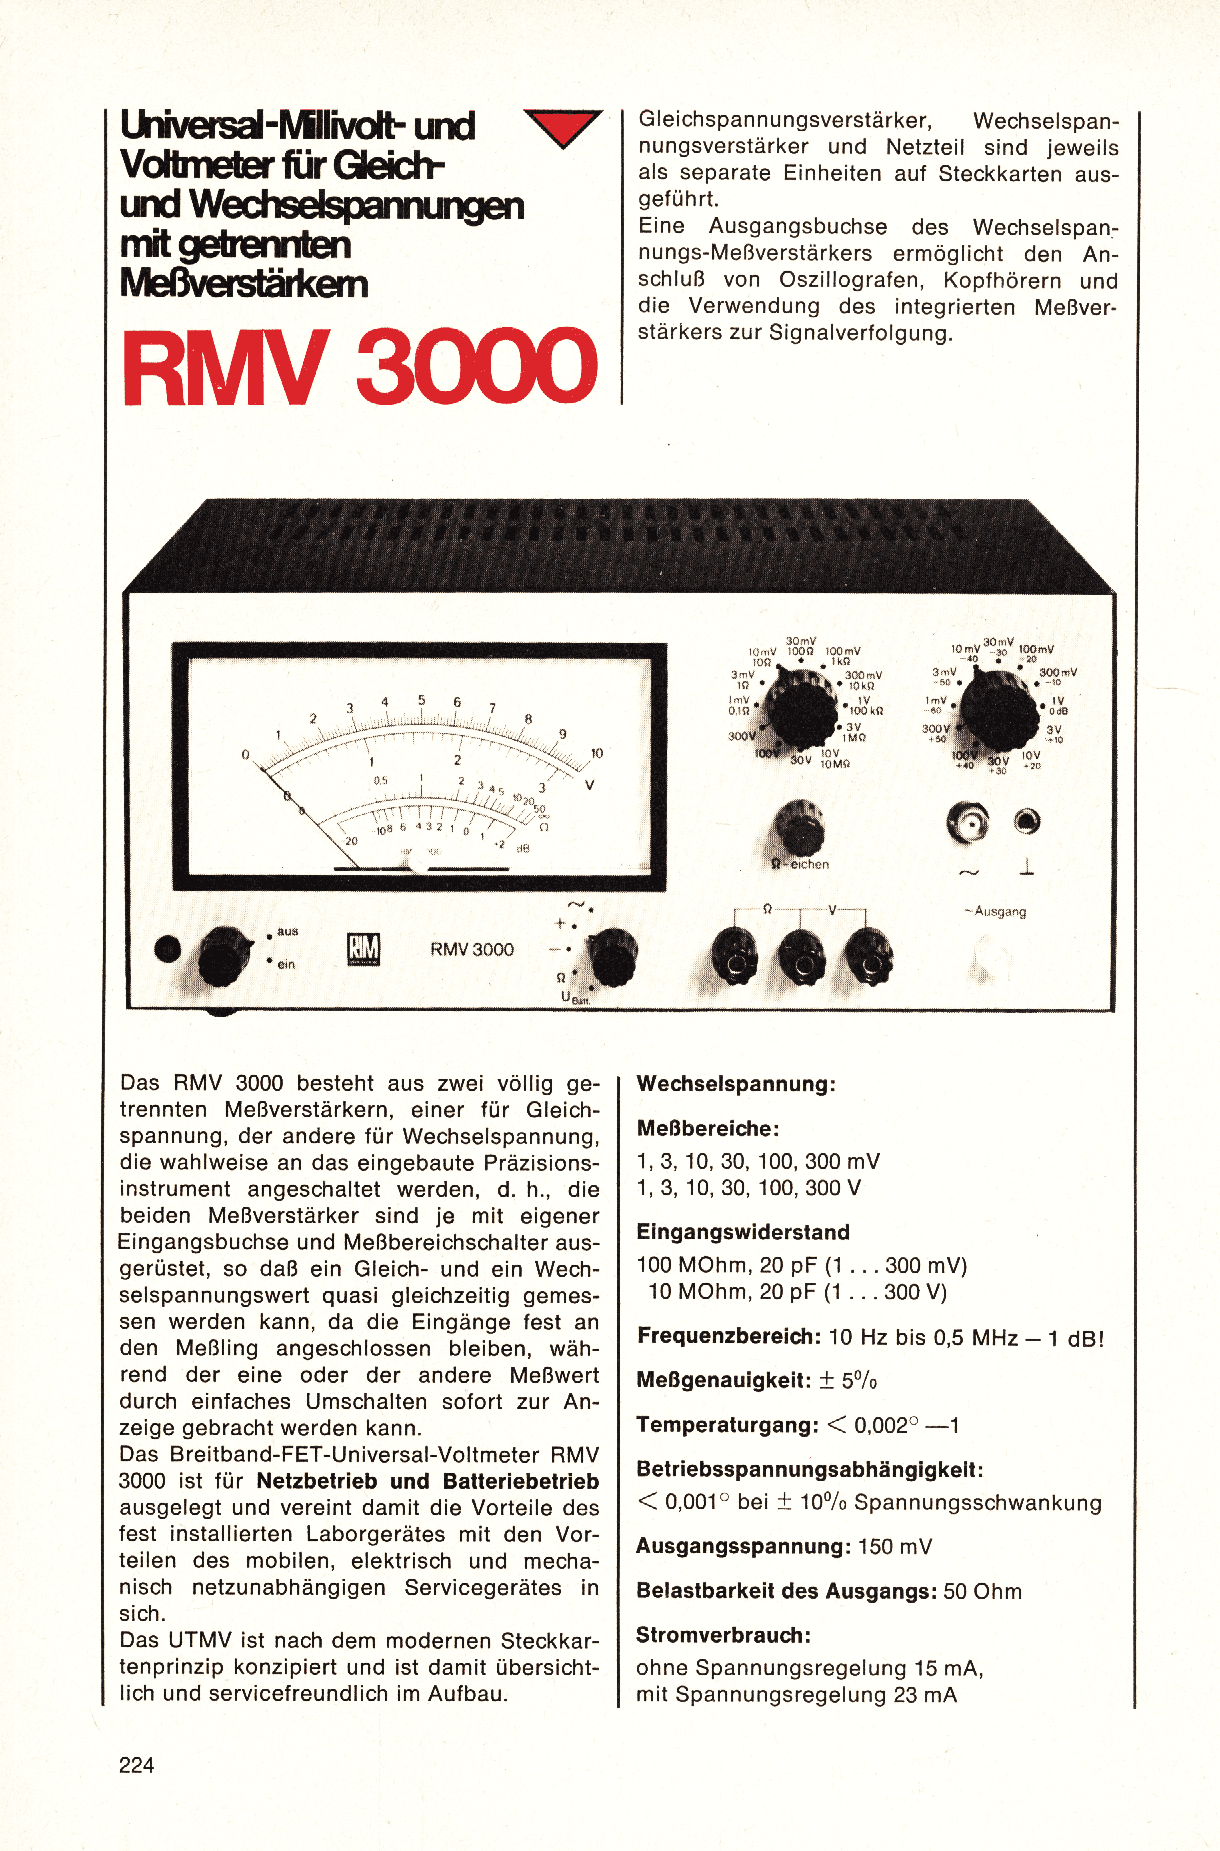 RIM RMV3000 von Radio RIM-München - Mikrocontroller.net